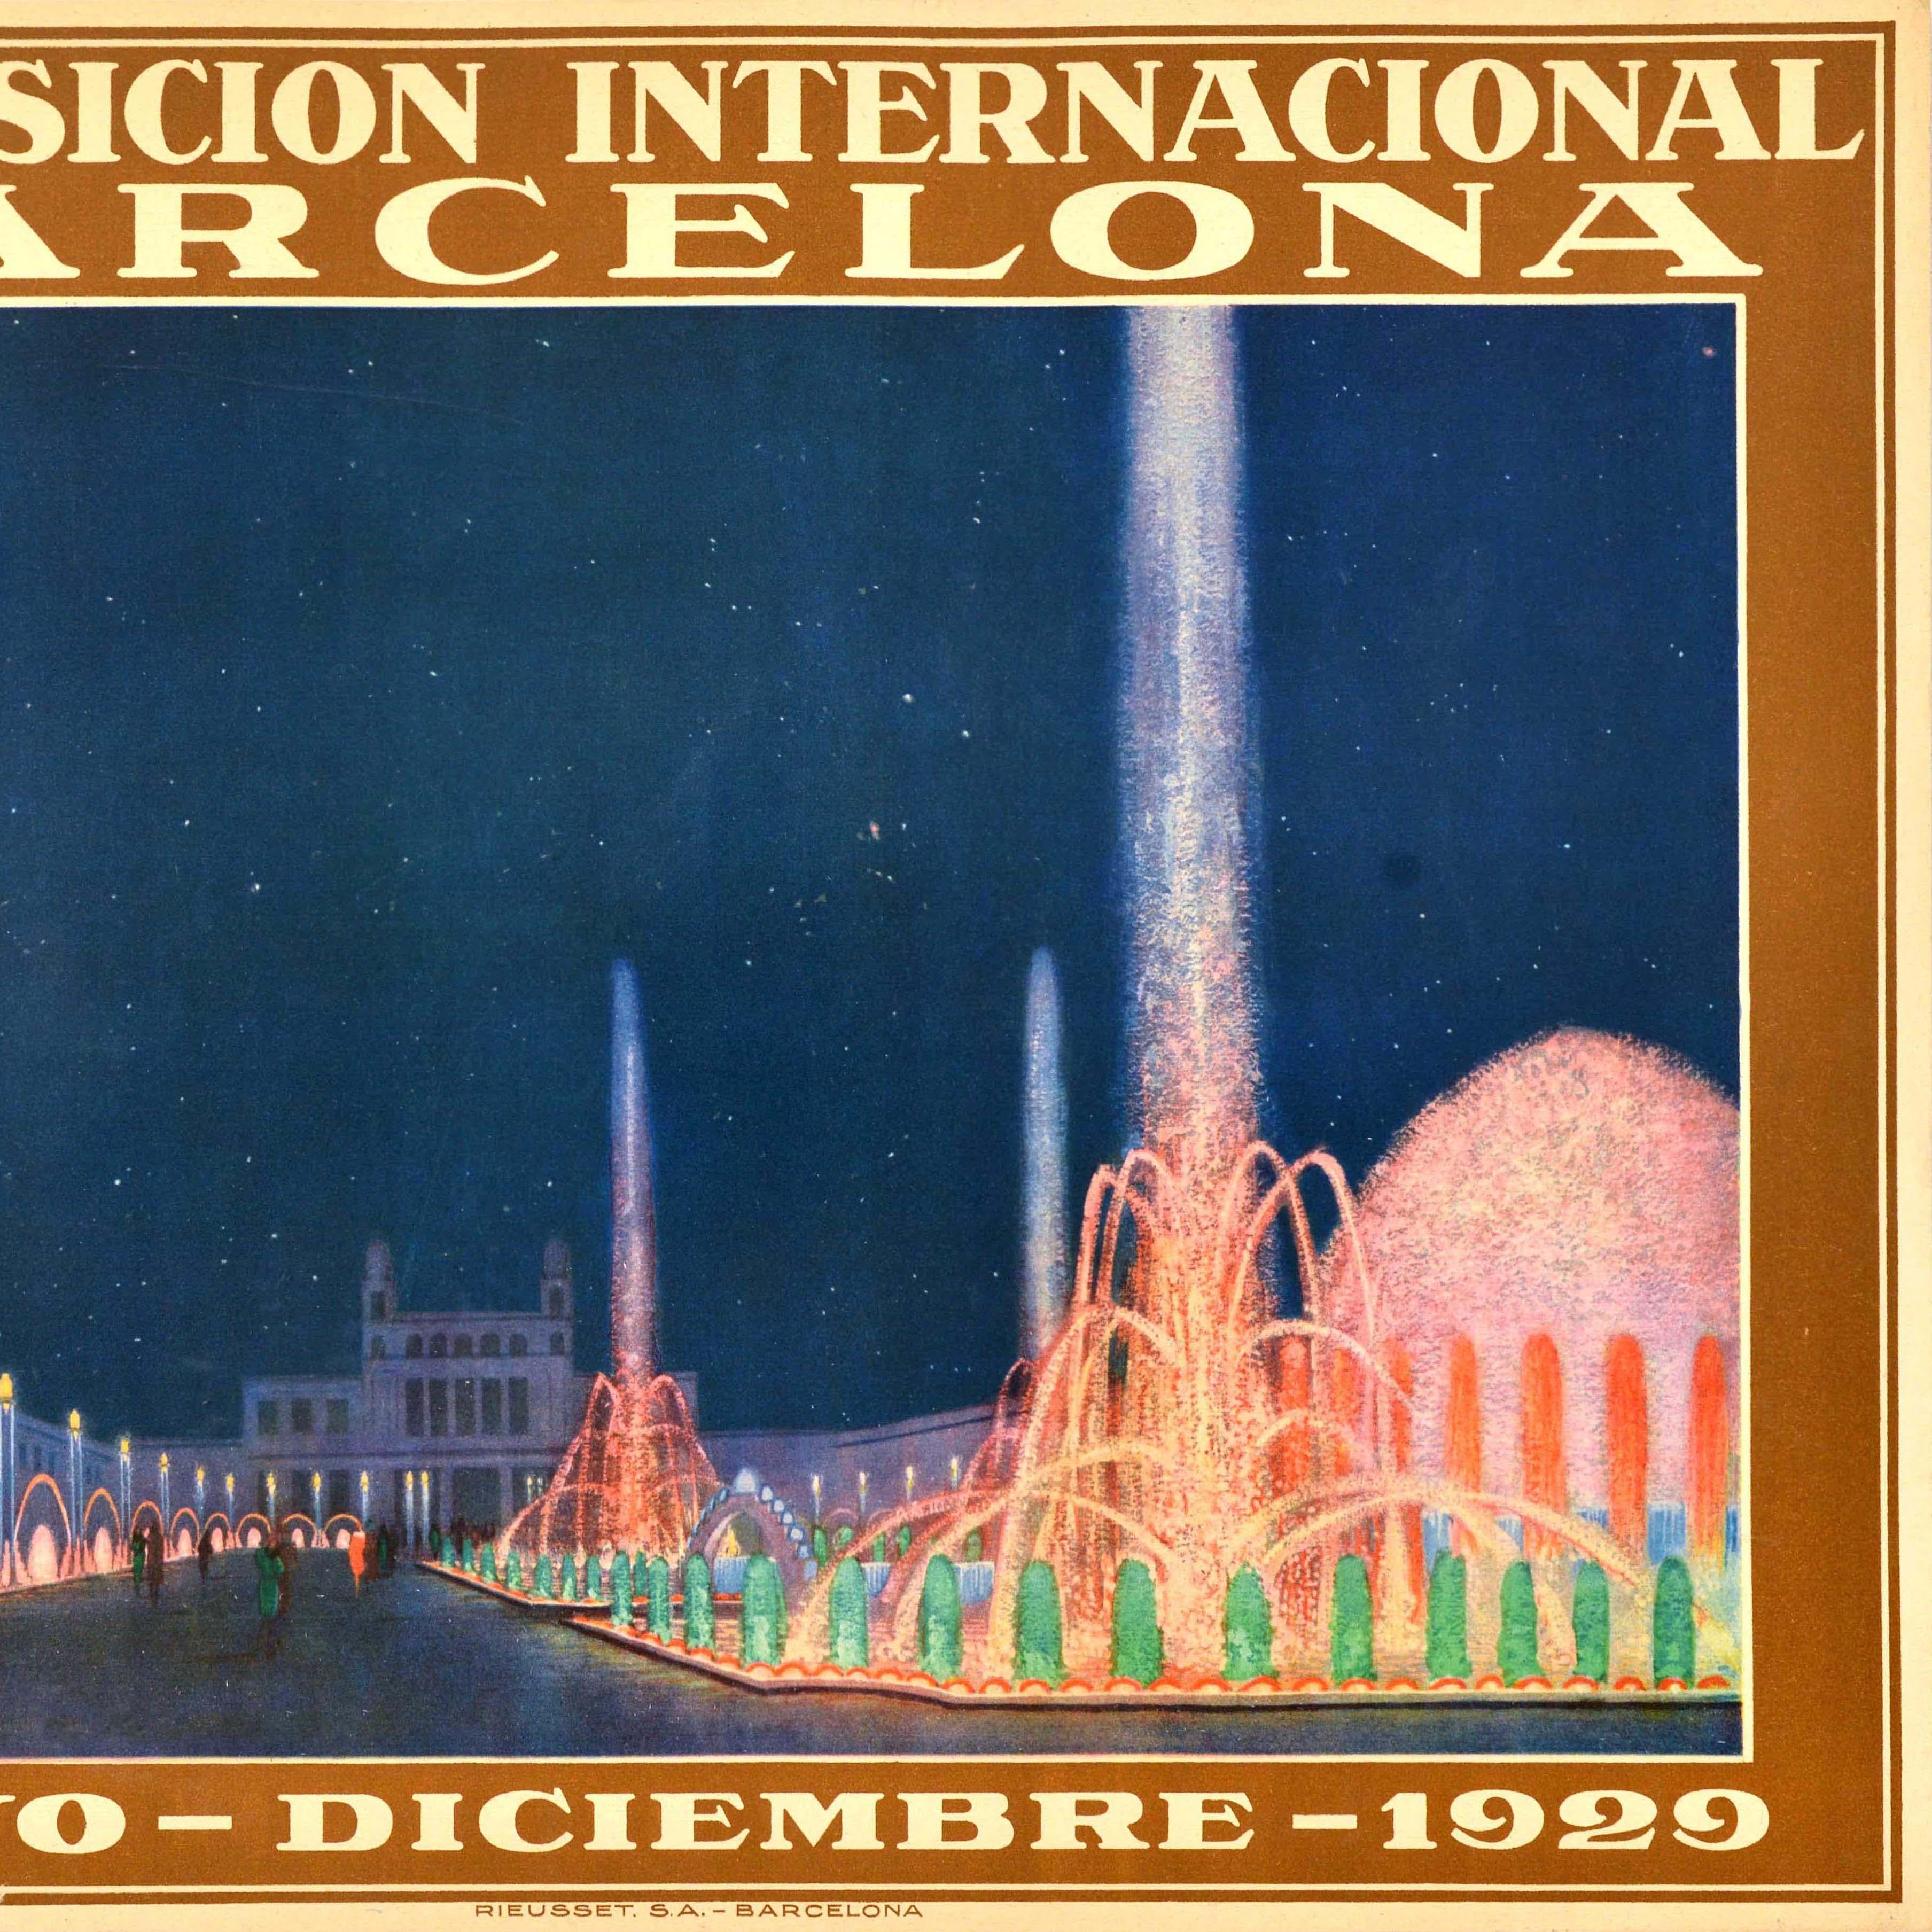 Original-Werbeplakat für die Internationale Ausstellung Exposicion Internacional Barcelona, die vom 20. Mai 1929 bis zum 15. Januar 1930 stattfand, mit einer Illustration von Menschen, die entlang der farbenfrohen Magischen Fontäne und der von